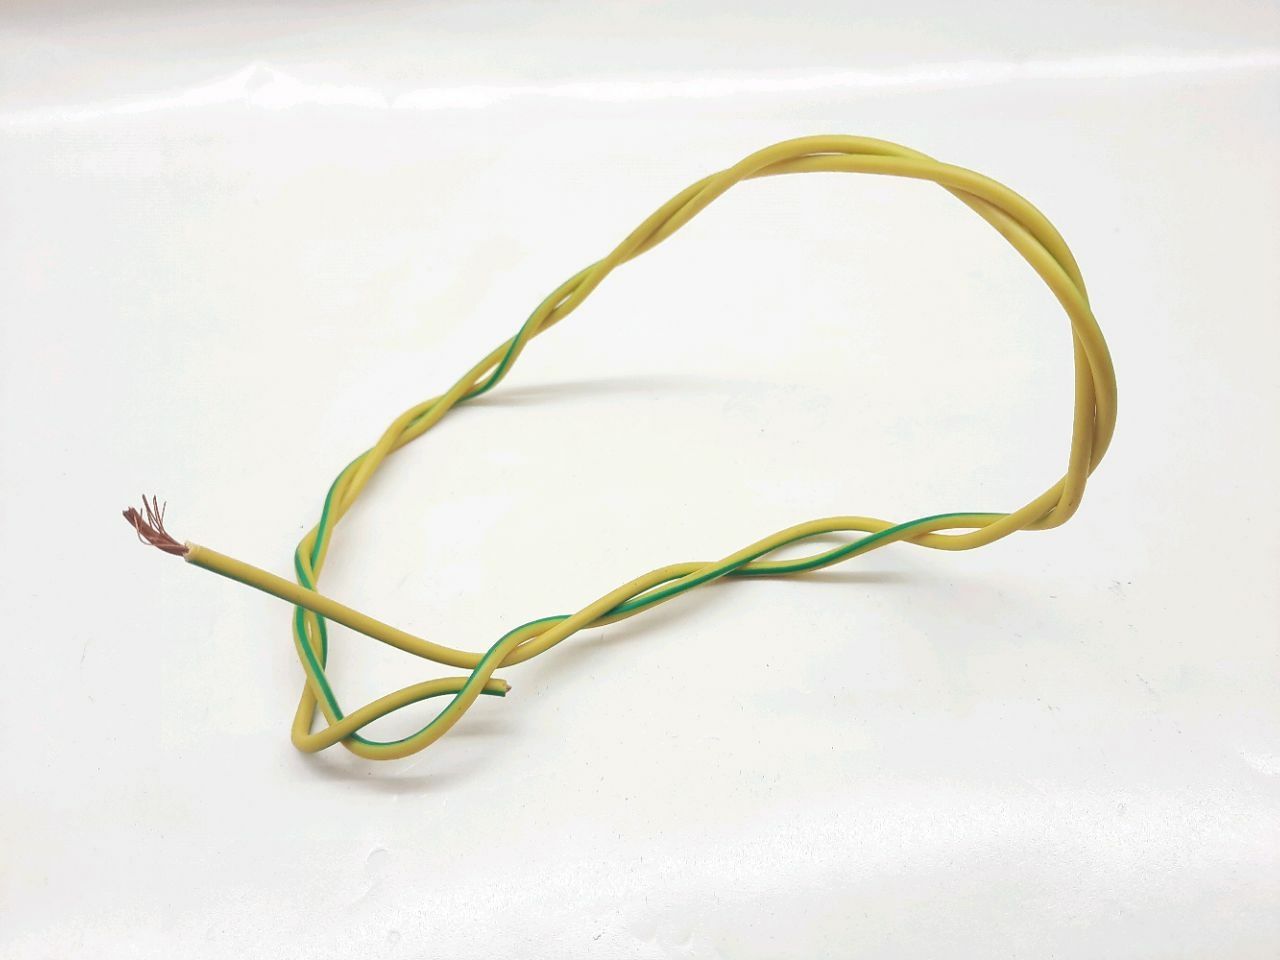 Cablu electric PV-3 2,5 (galben-verde)